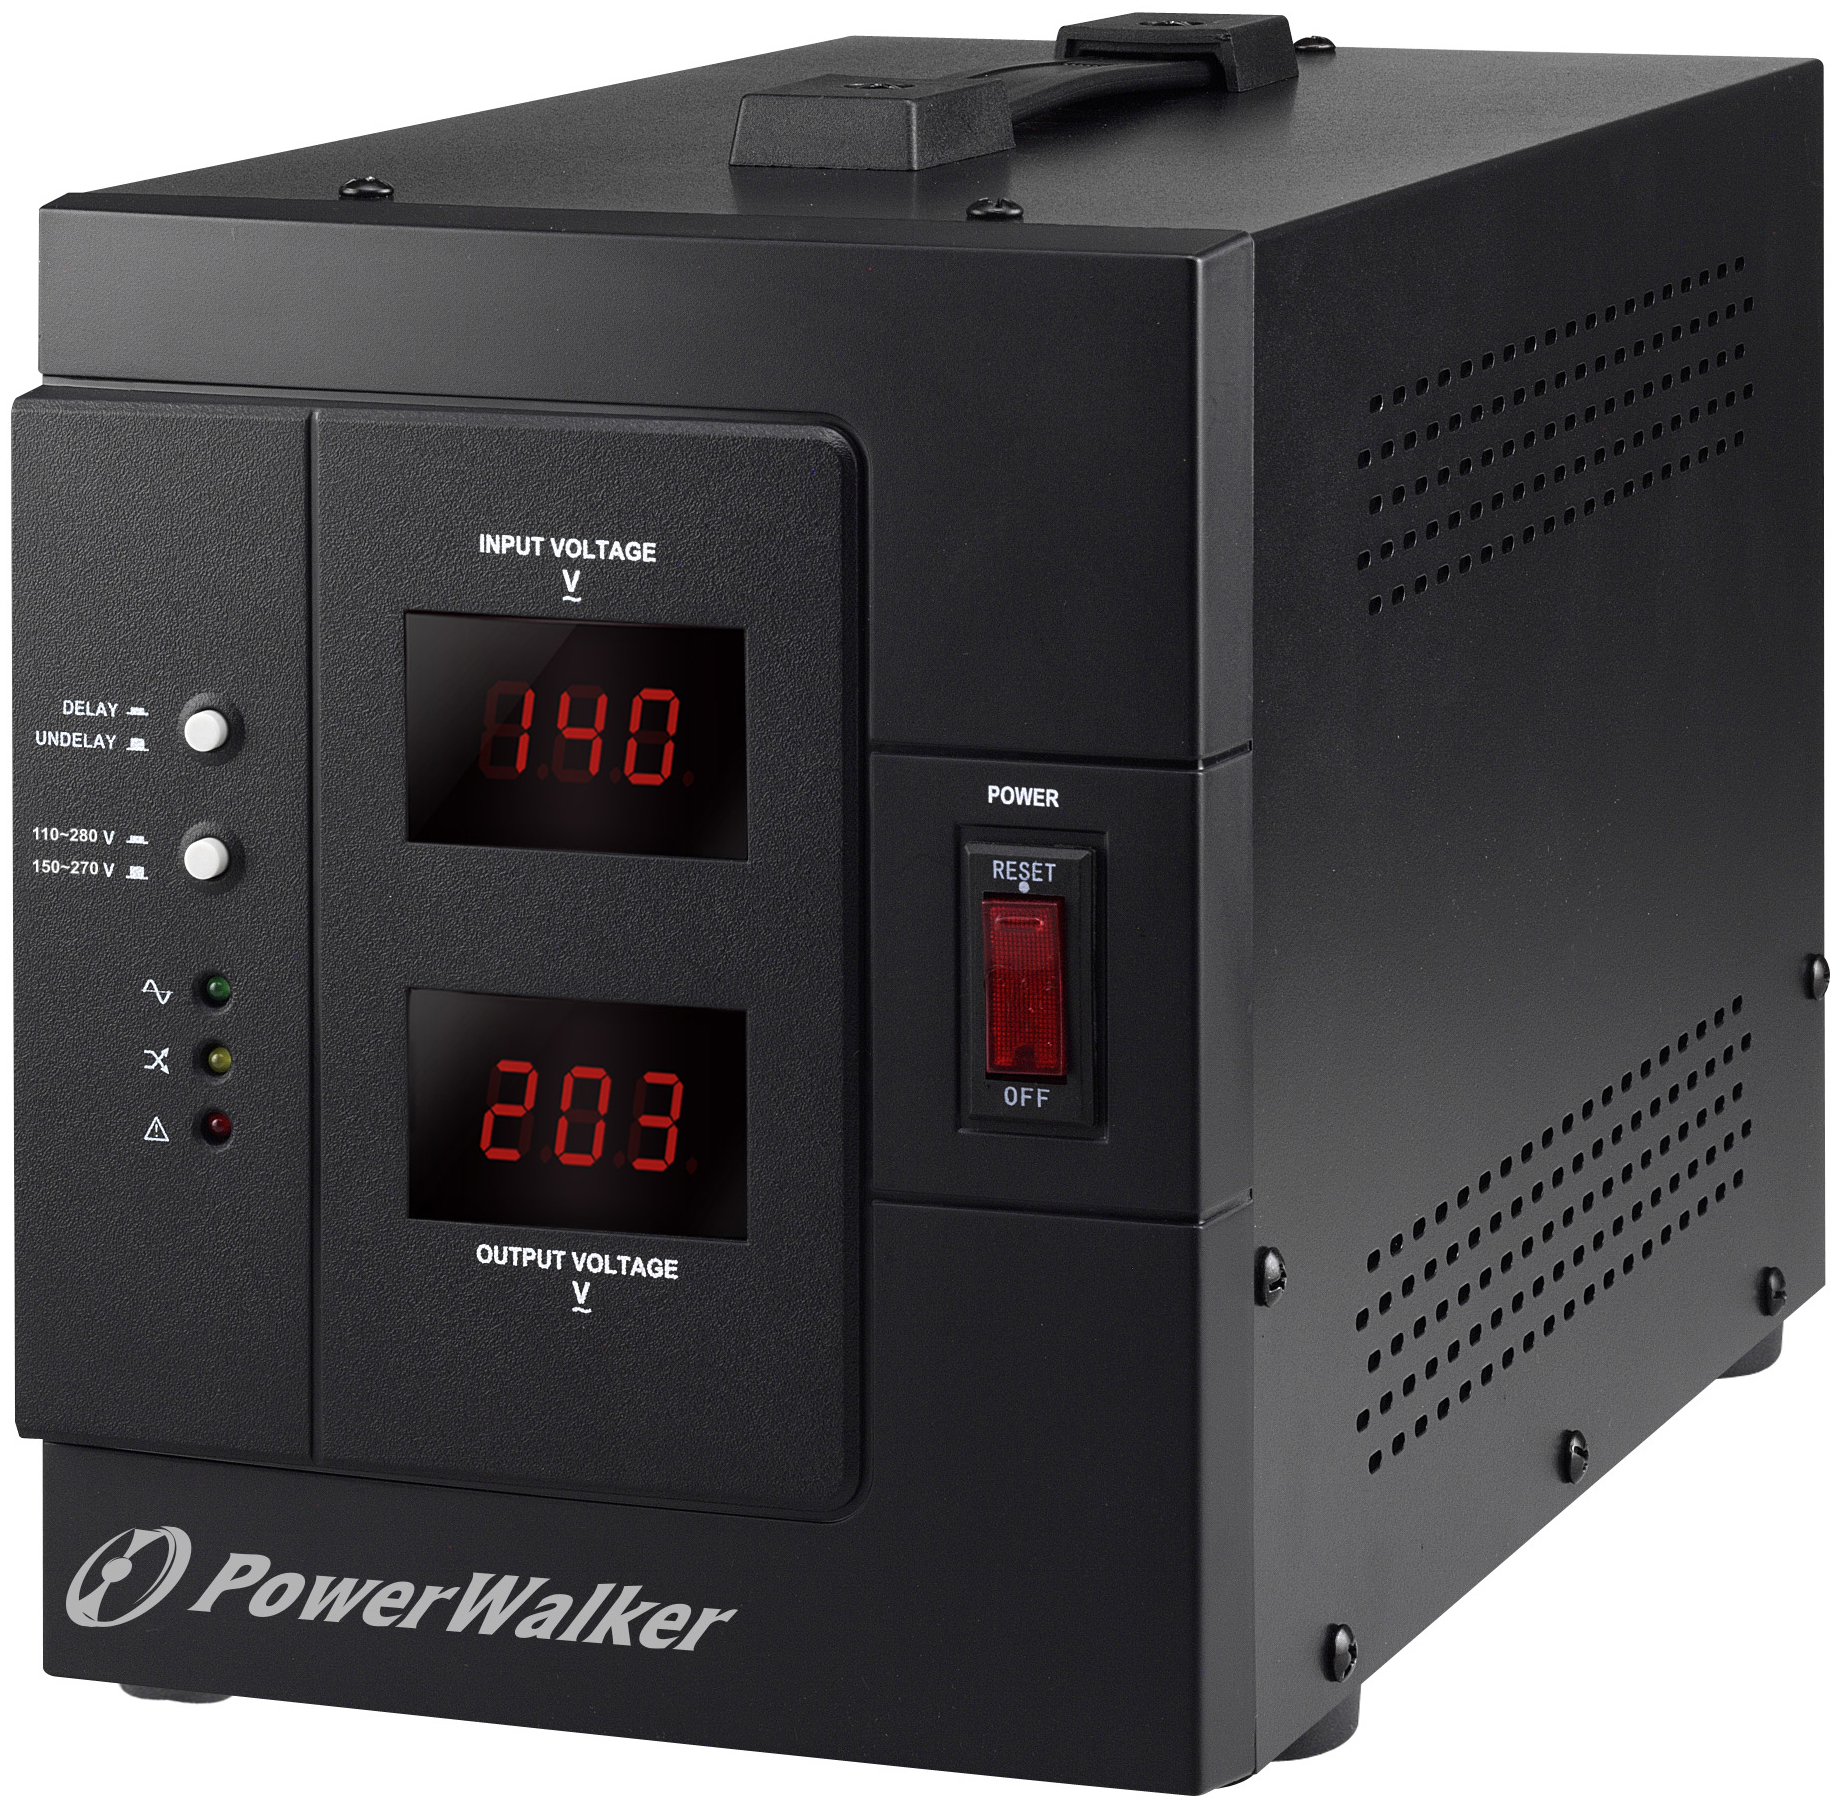 POWERWALKER AVR 3000 SIV | 2400W, AVR